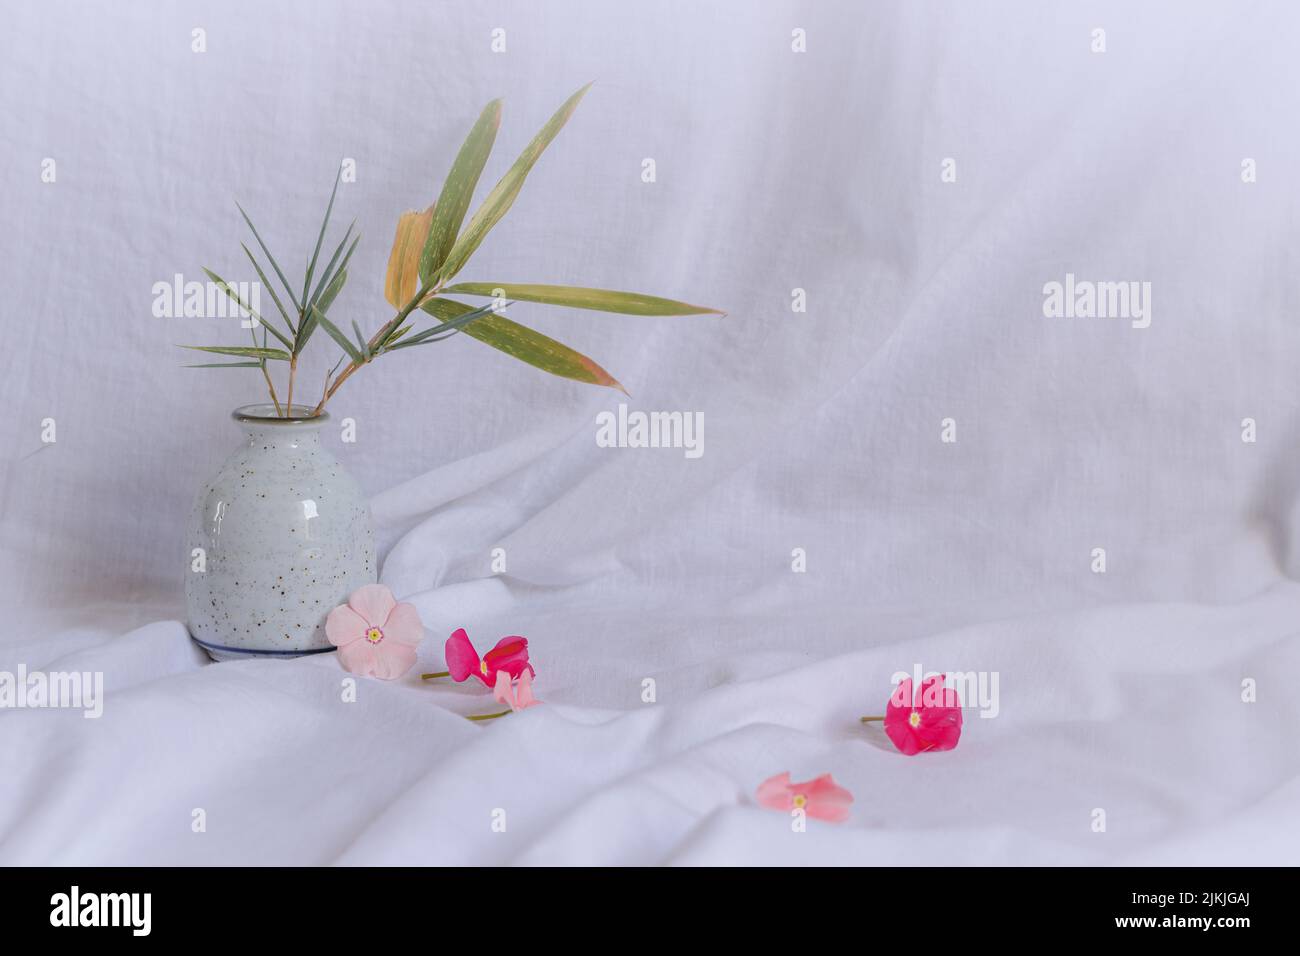 Composizione di fiori perivinkle dal colore bianco brillante che mostrano un'estetica primaverile fresca e tranquilla Foto Stock